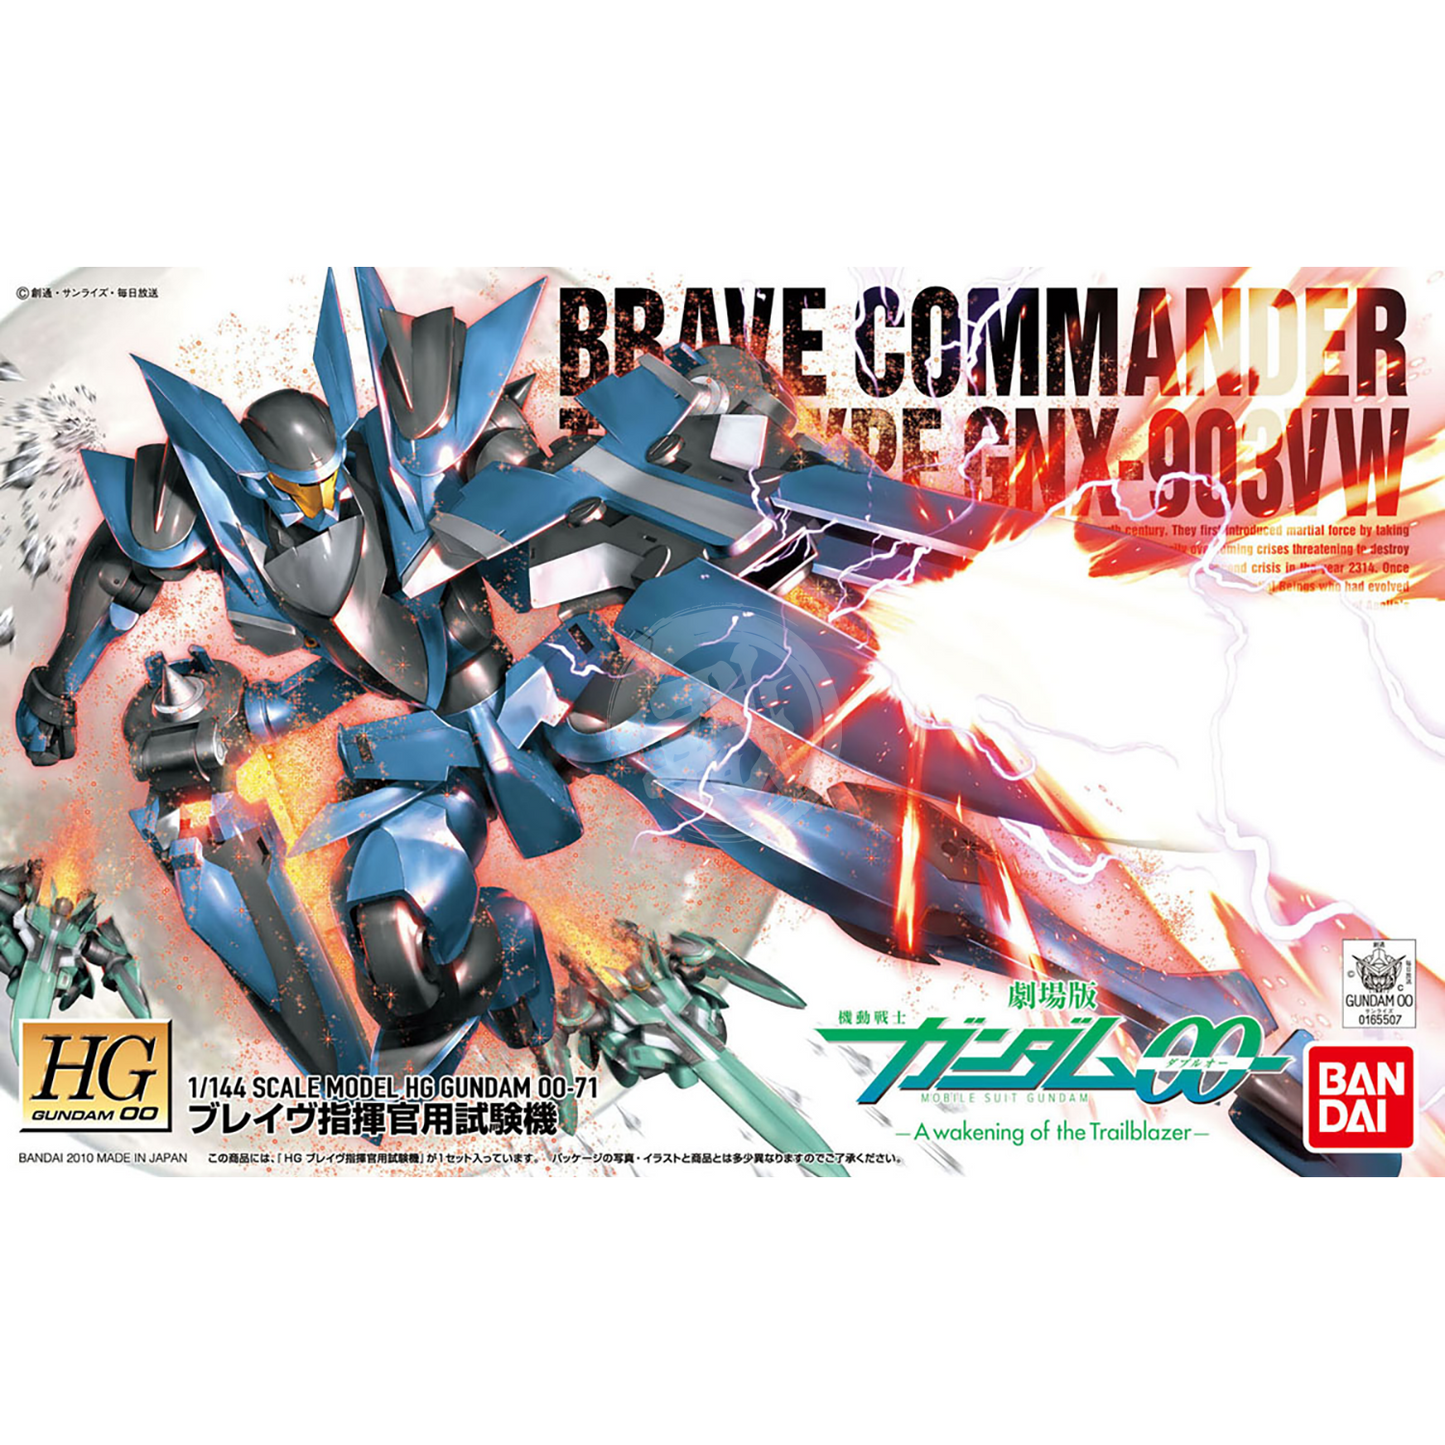 HG Brave [Commander Test Type] - ShokuninGunpla